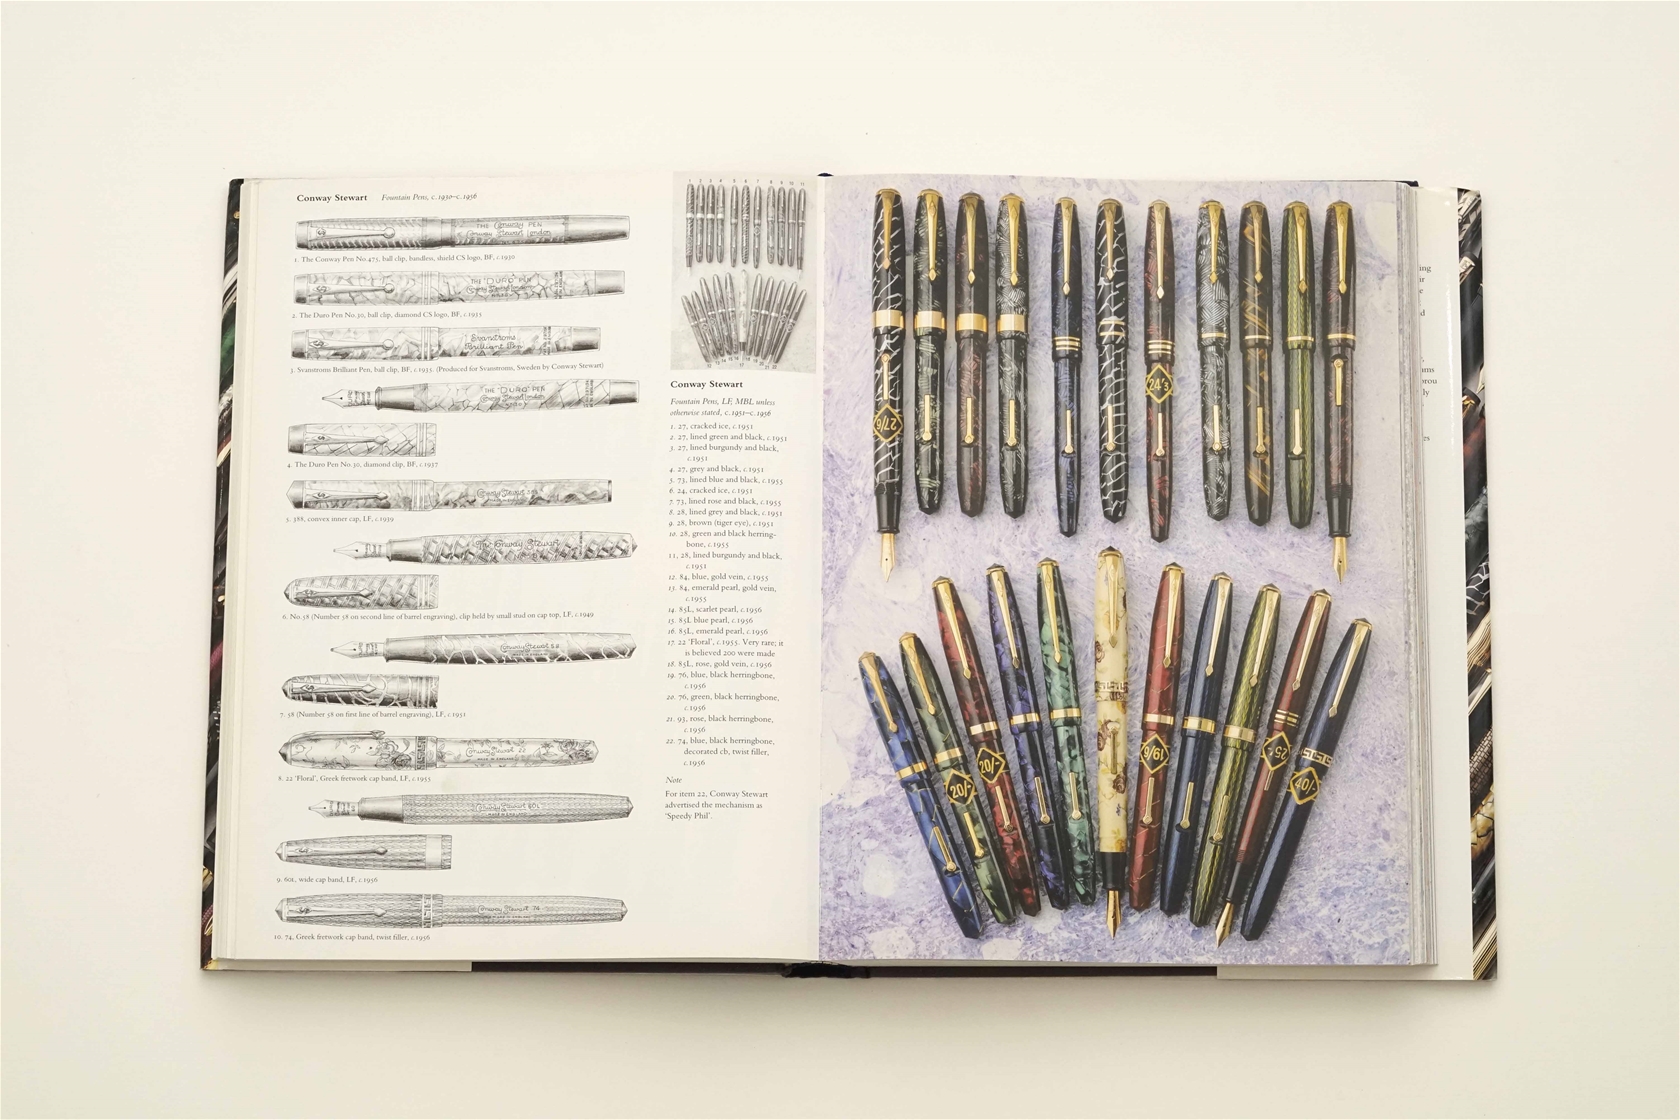 Sách chuyên đề Fountain Pens Of The World - Tác giả Andreas Lambrou